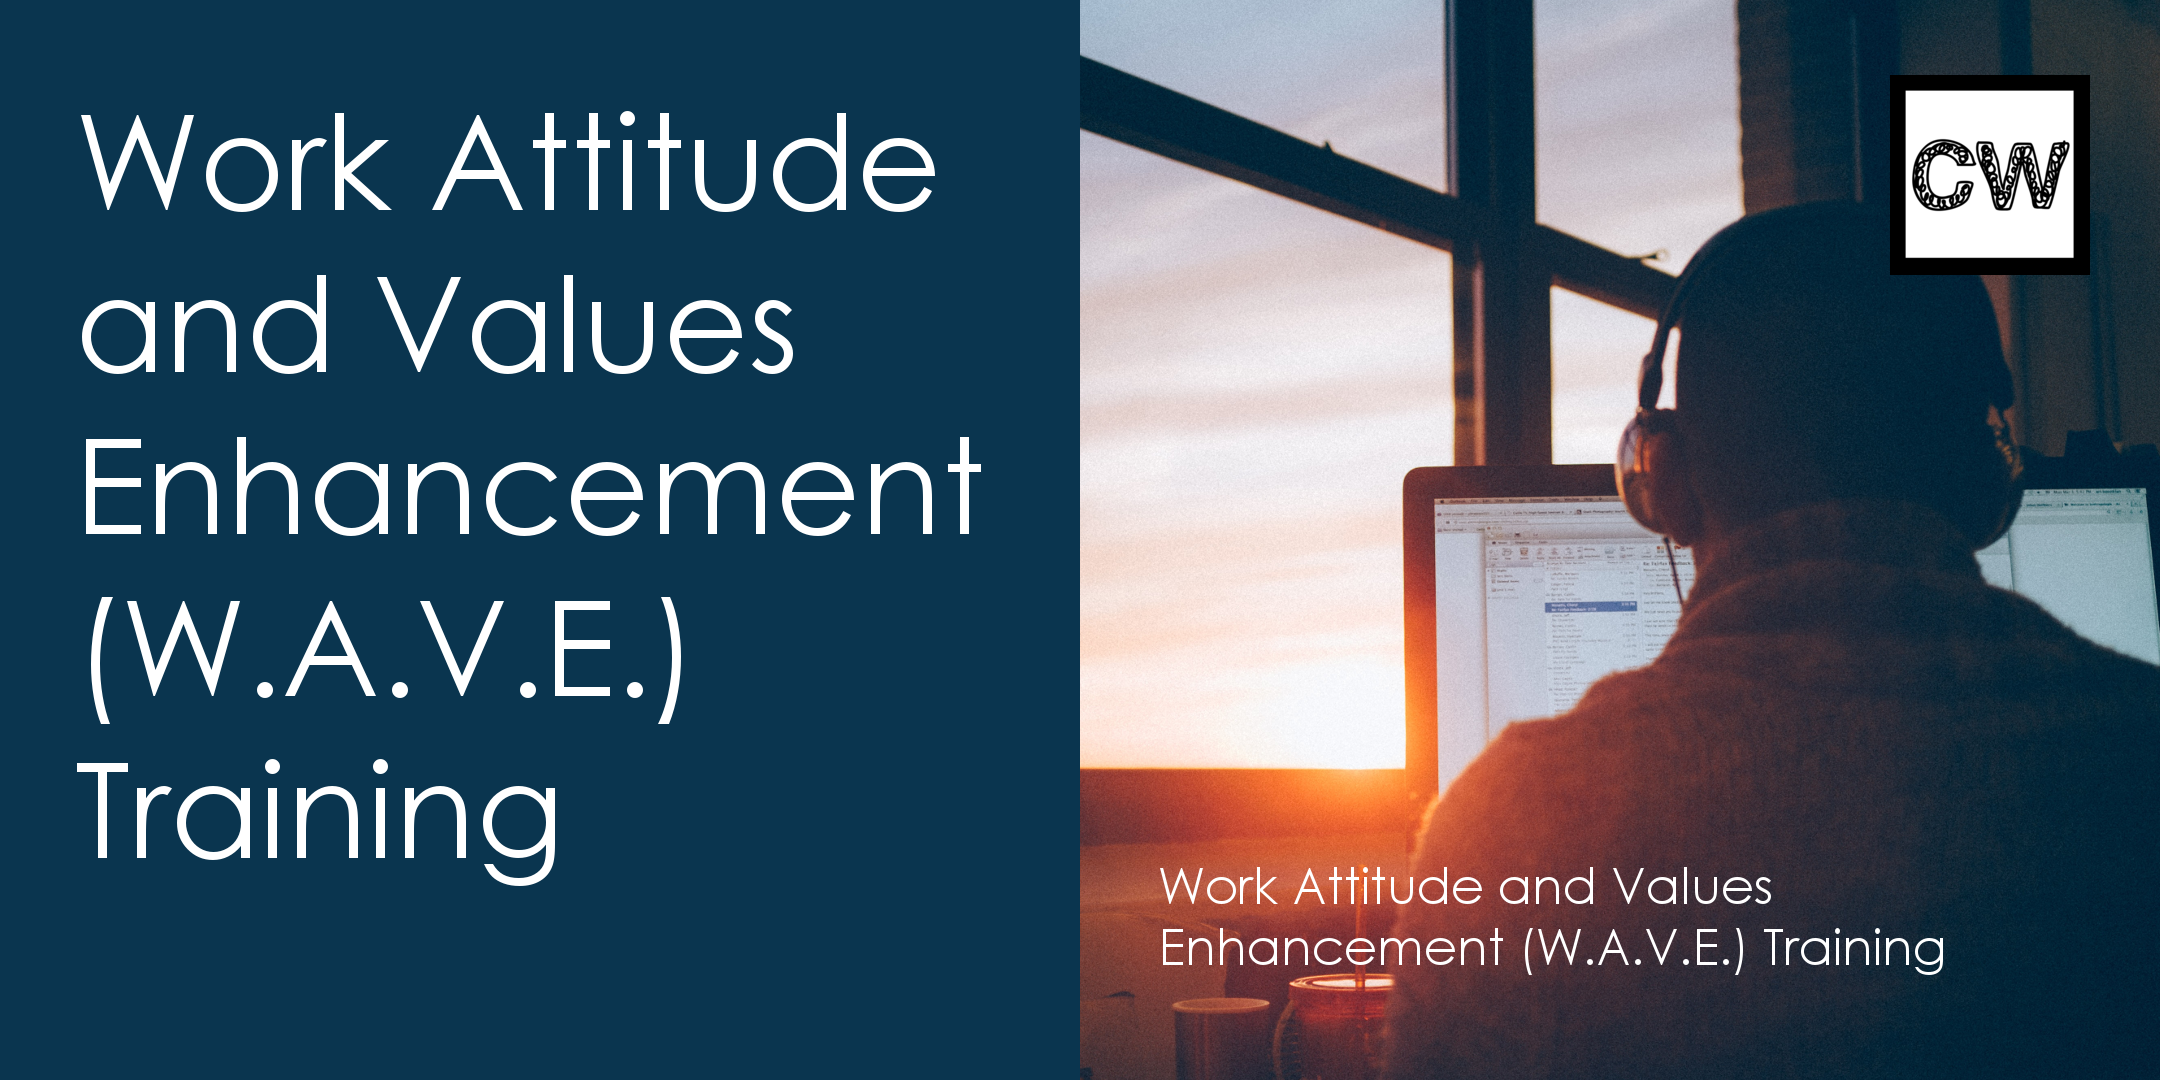 Work Attitude and Values Enhancement (W.A.V.E.)